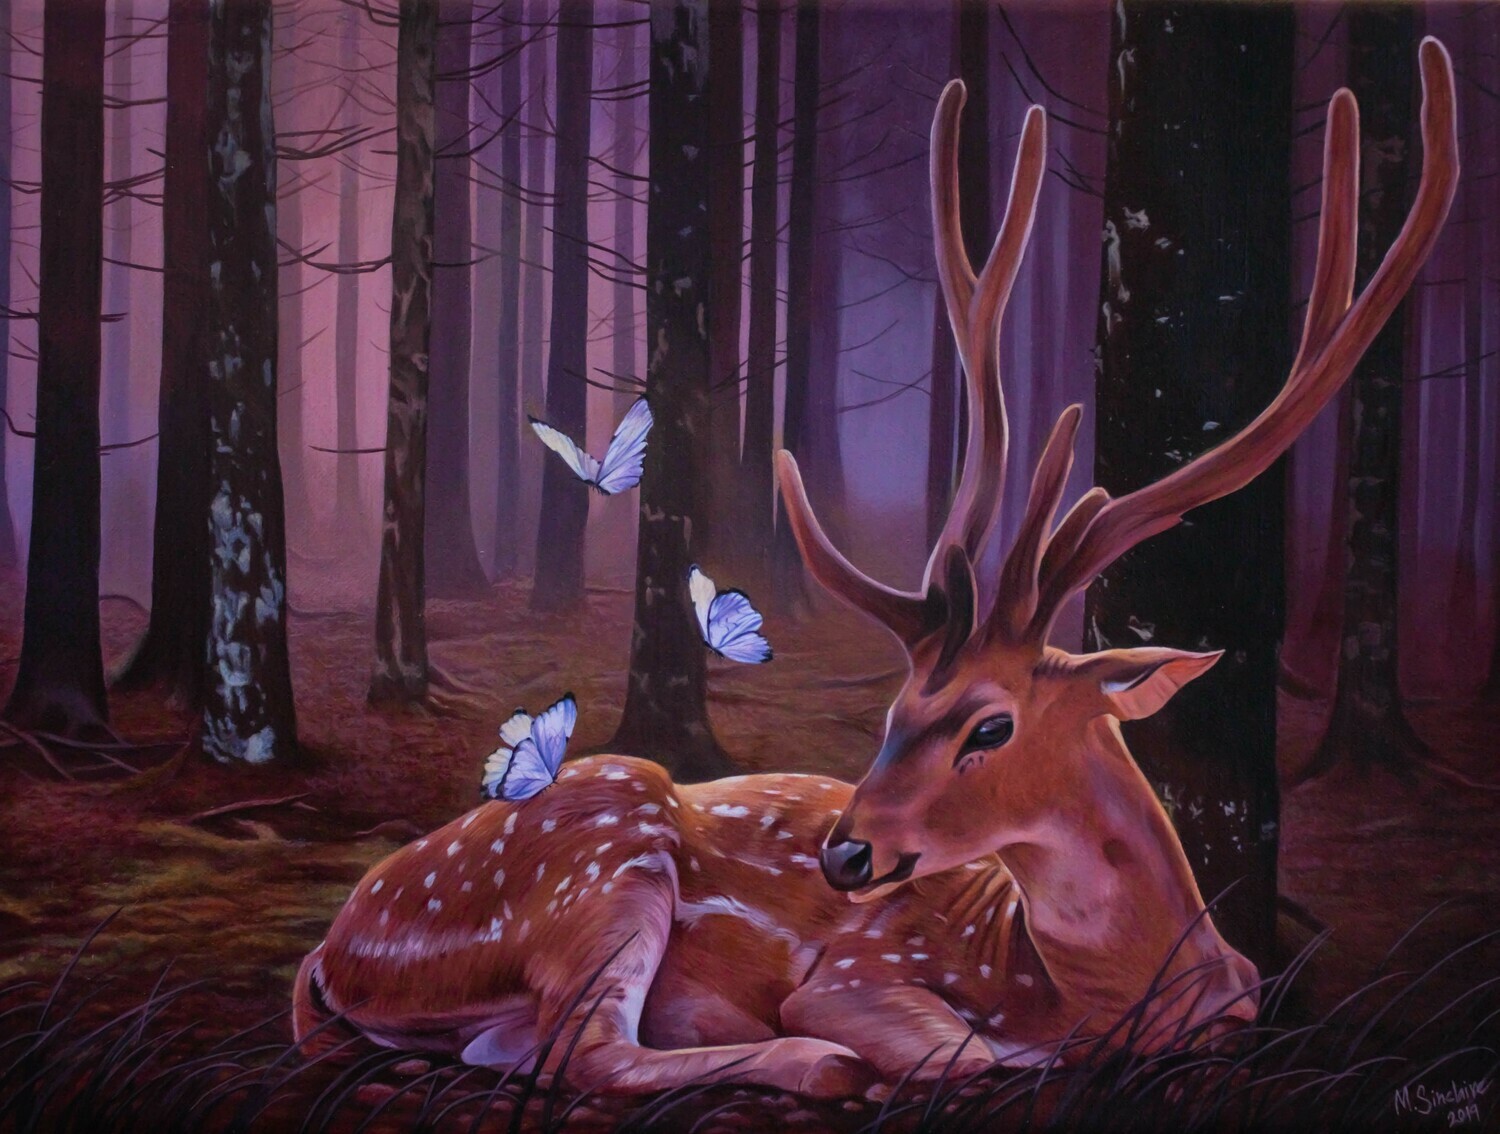 Original painting "Purple forest deer"